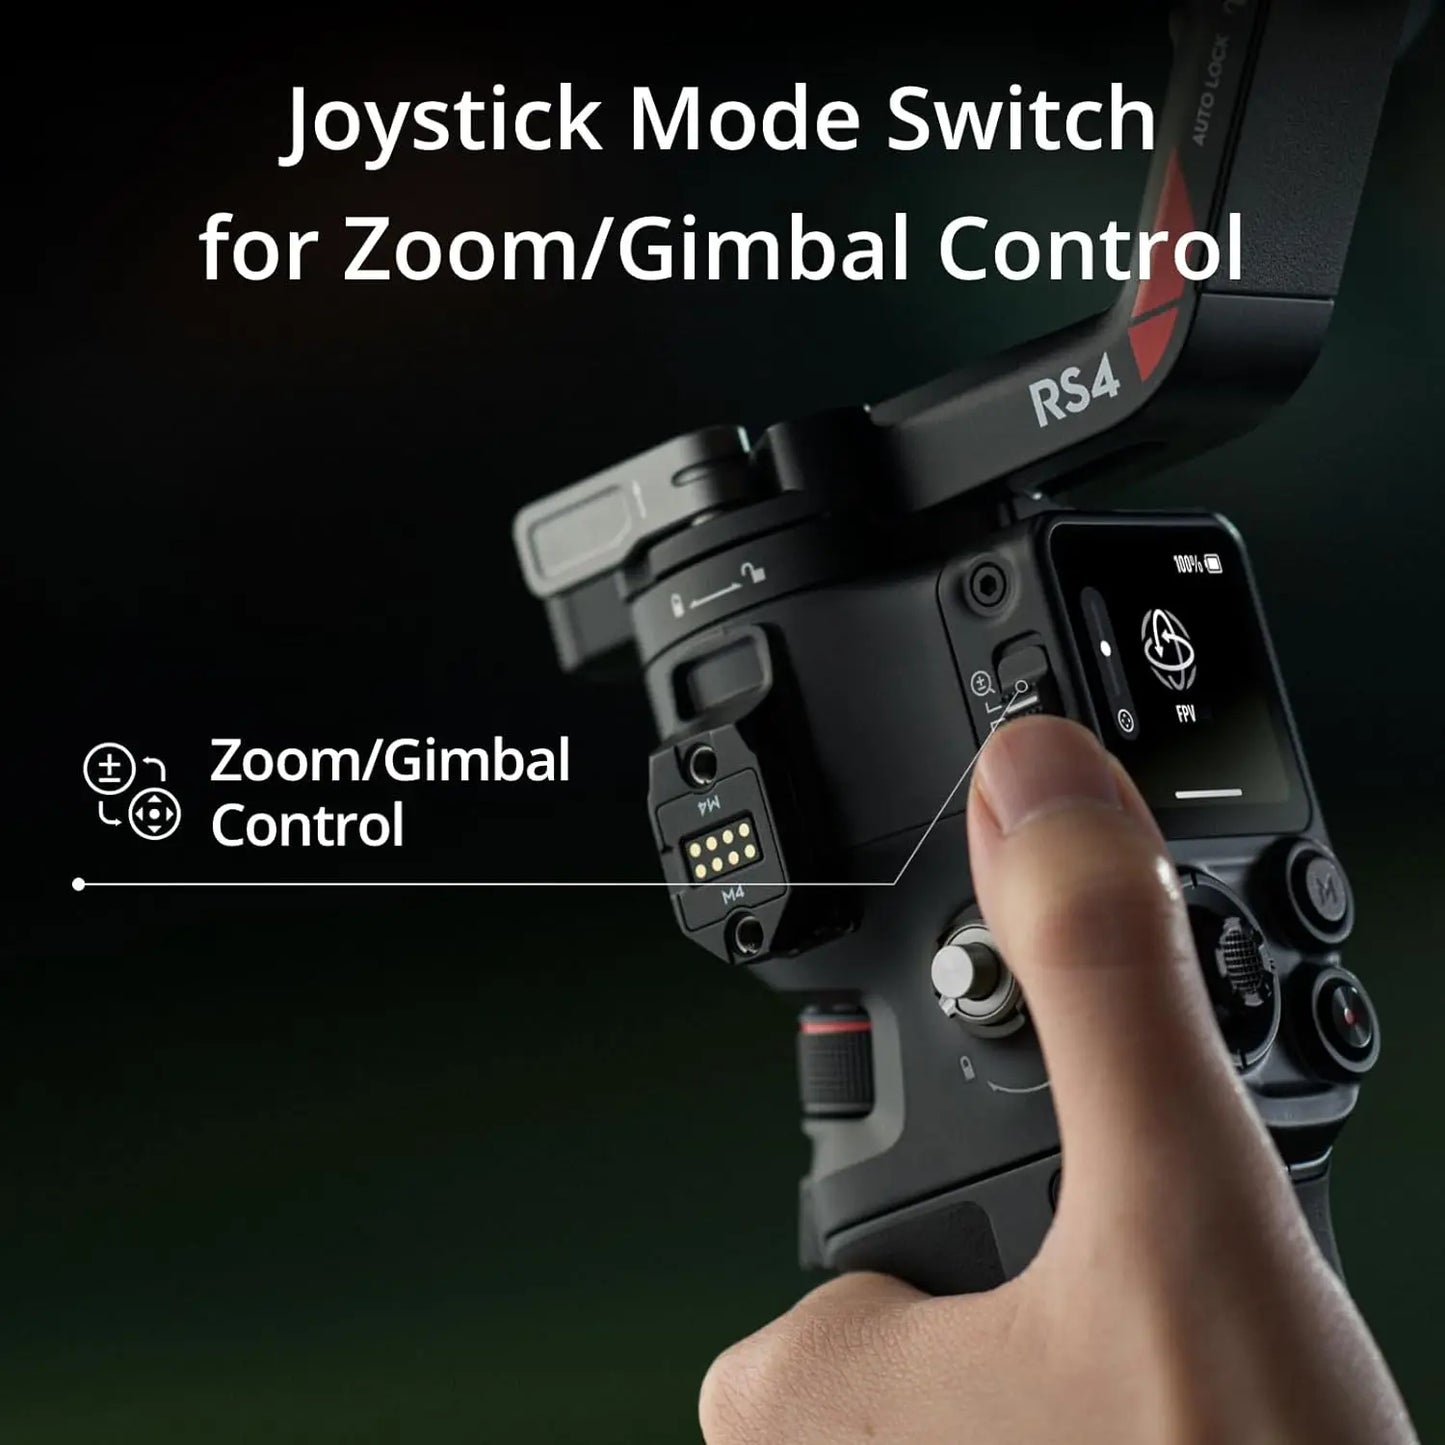 DJI RS 4 3-Axis Gimbal Stabilizer for DSLR and Mirrorless Cameras 2-Mode Switch Joystick, Camera Gimbal DJI Original In Stock